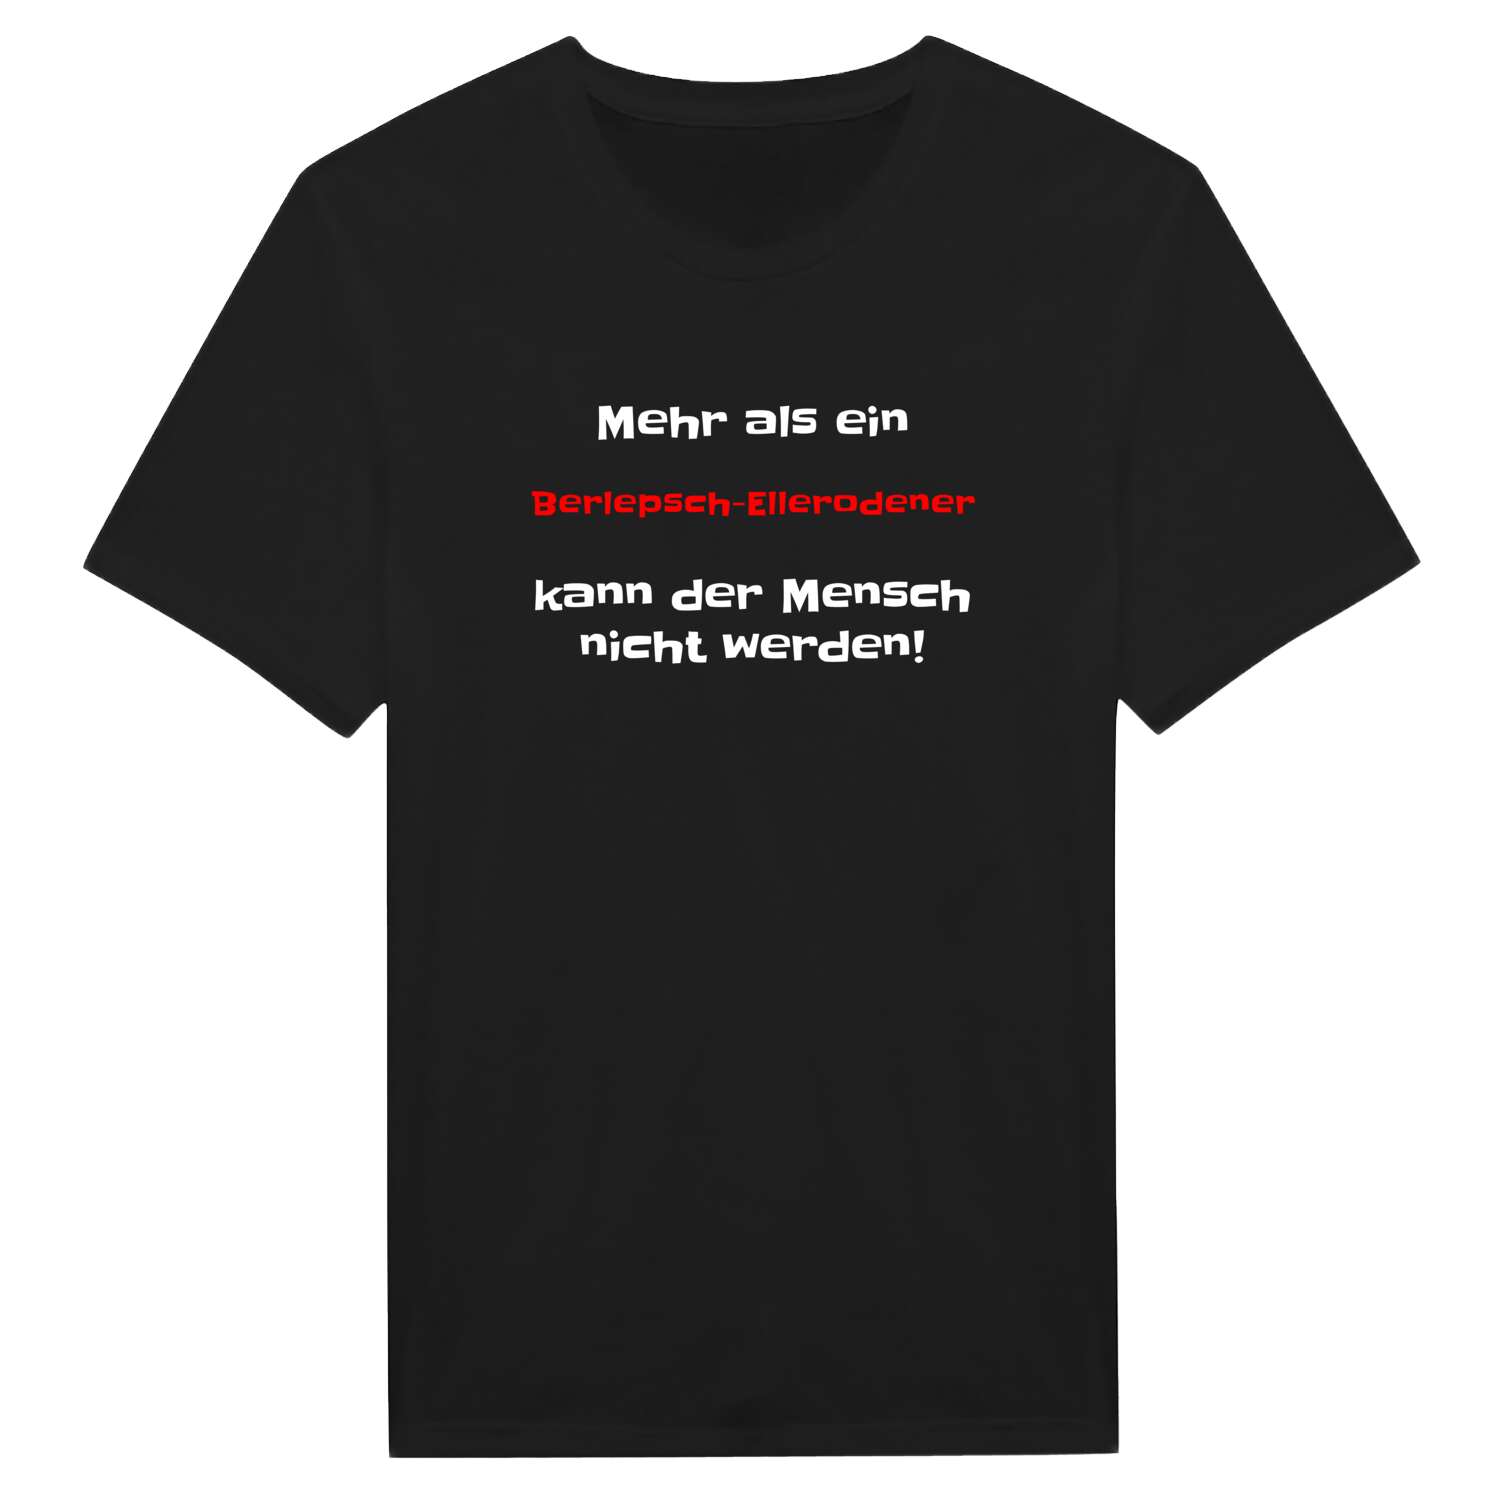 Berlepsch-Ellerode T-Shirt »Mehr als ein«